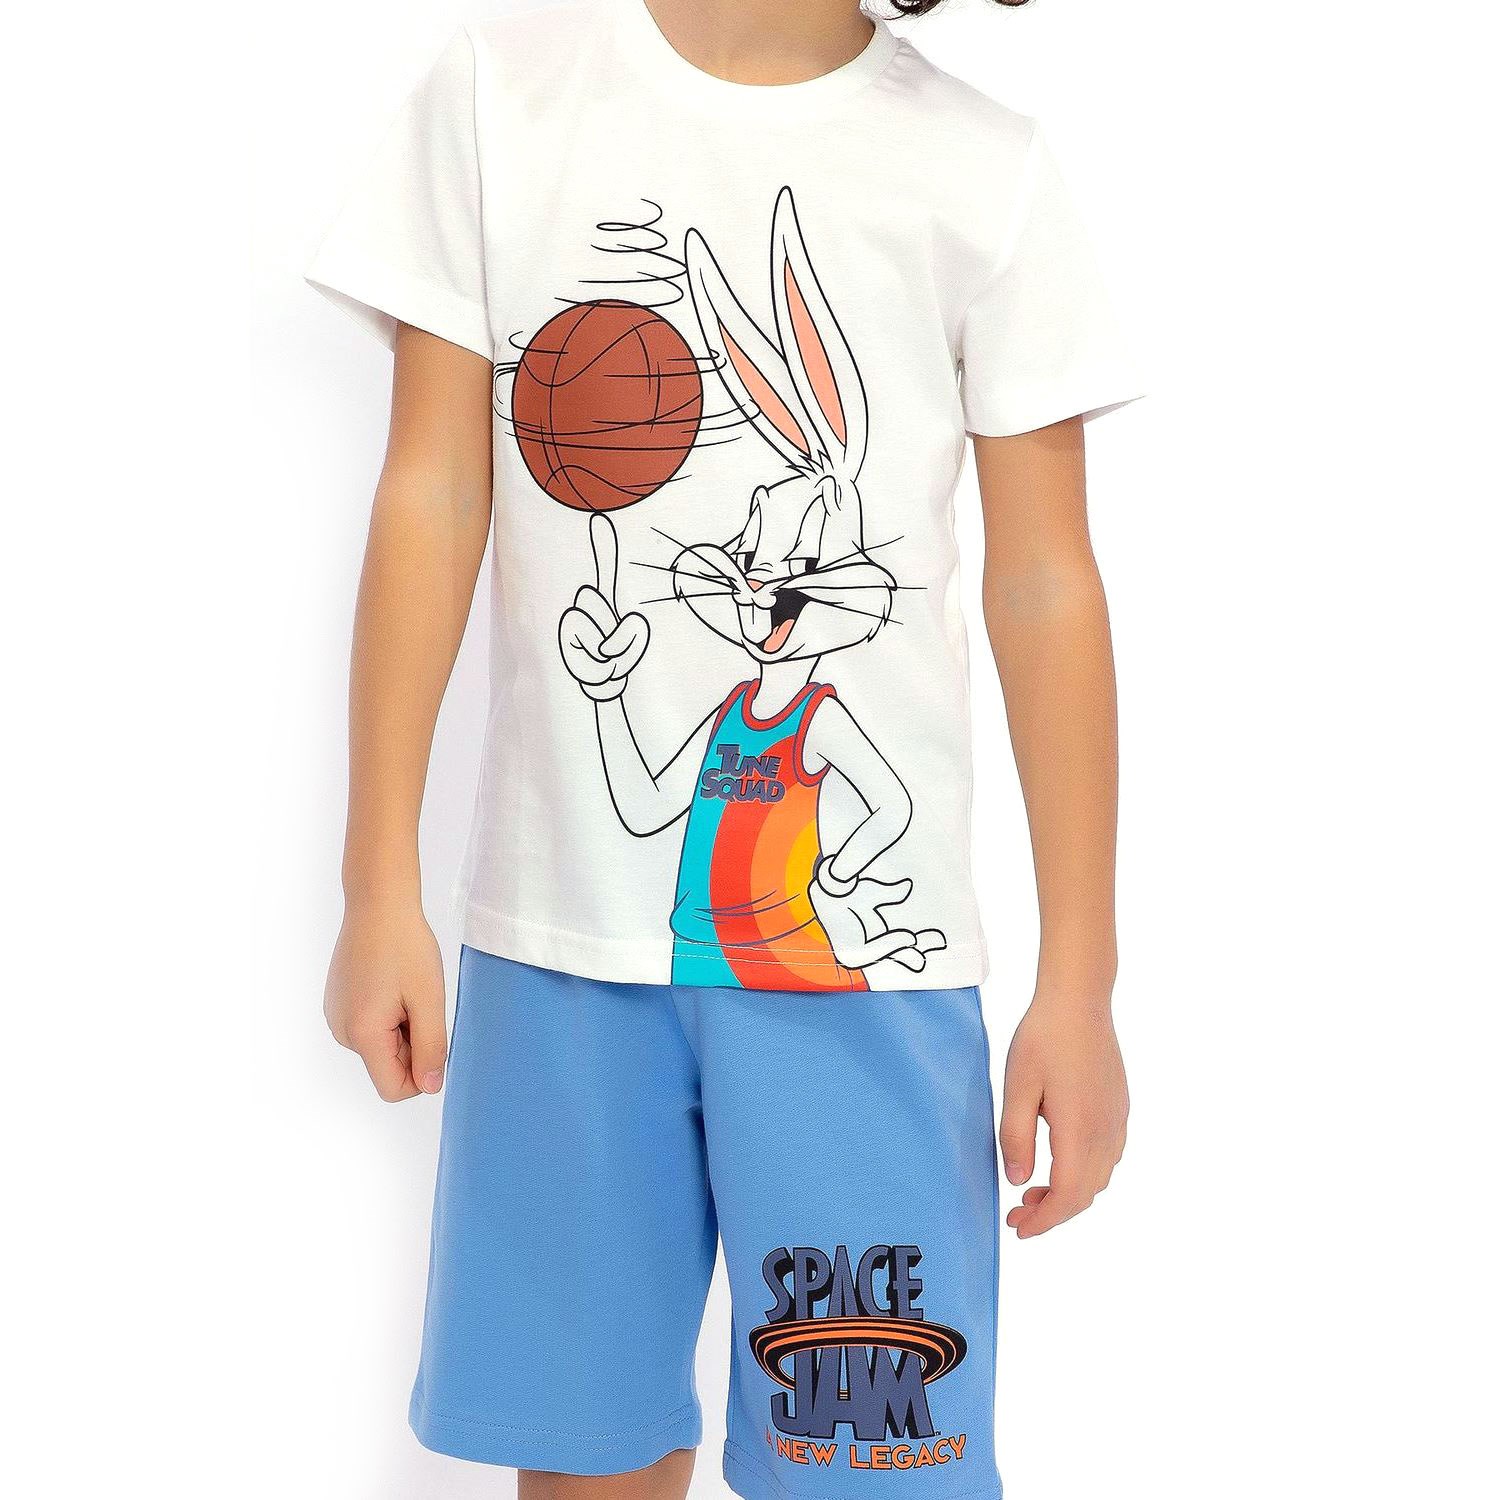 Bugs Bunny Erkek Çocuk Bermuda Takımı L1466-3 Krem